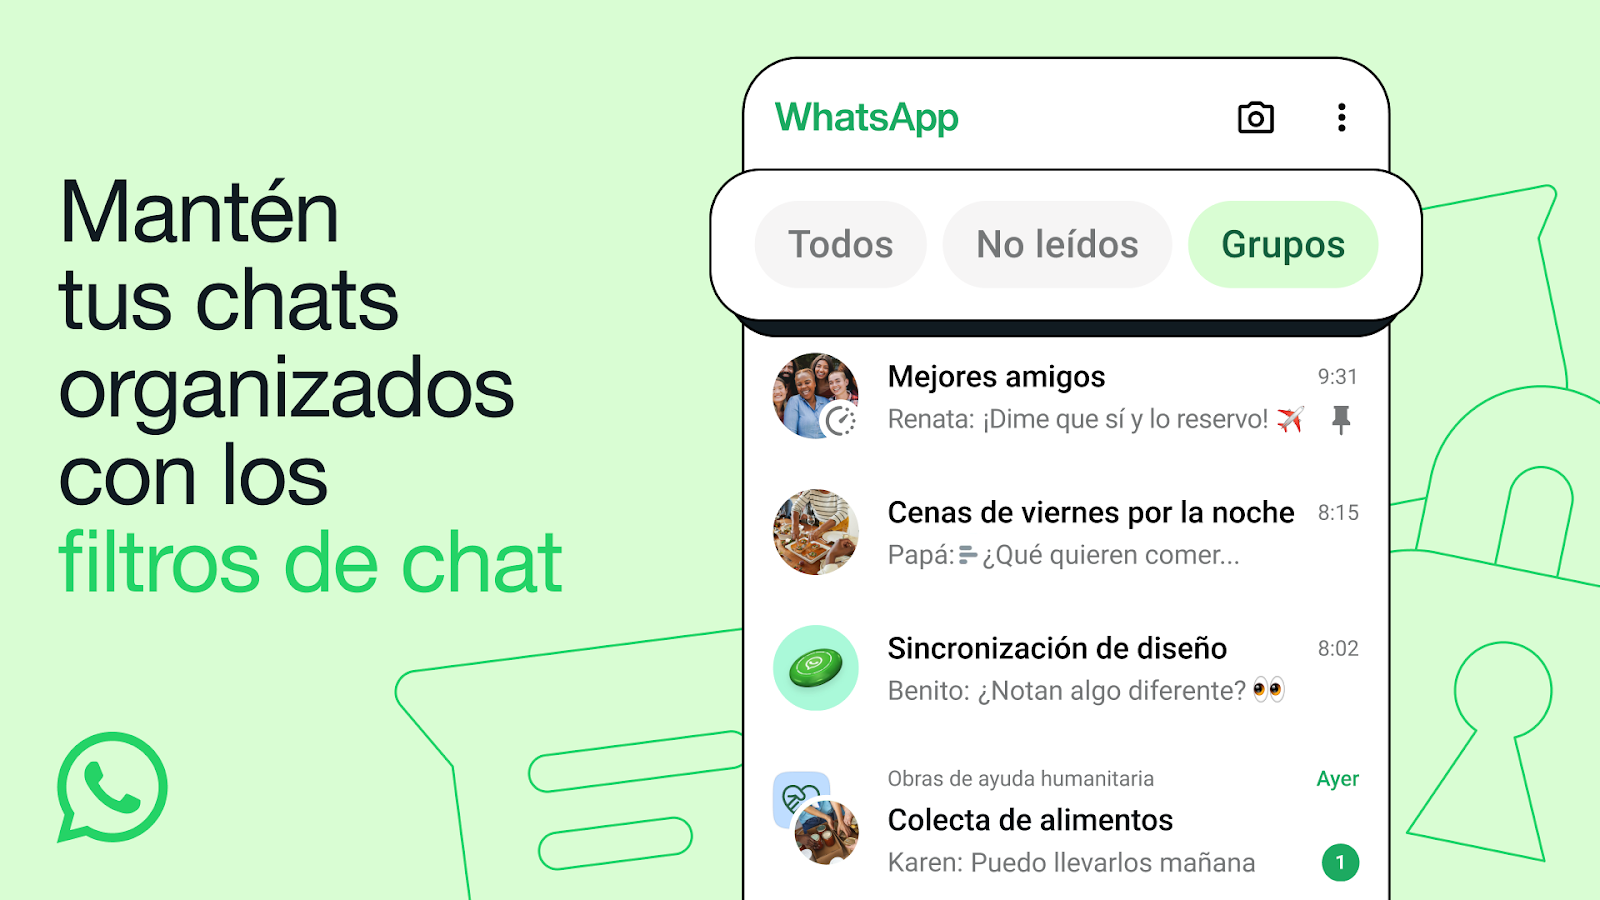 Los filtros permite que los usuarios gestionen mejor sus chats. (WhatsApp)